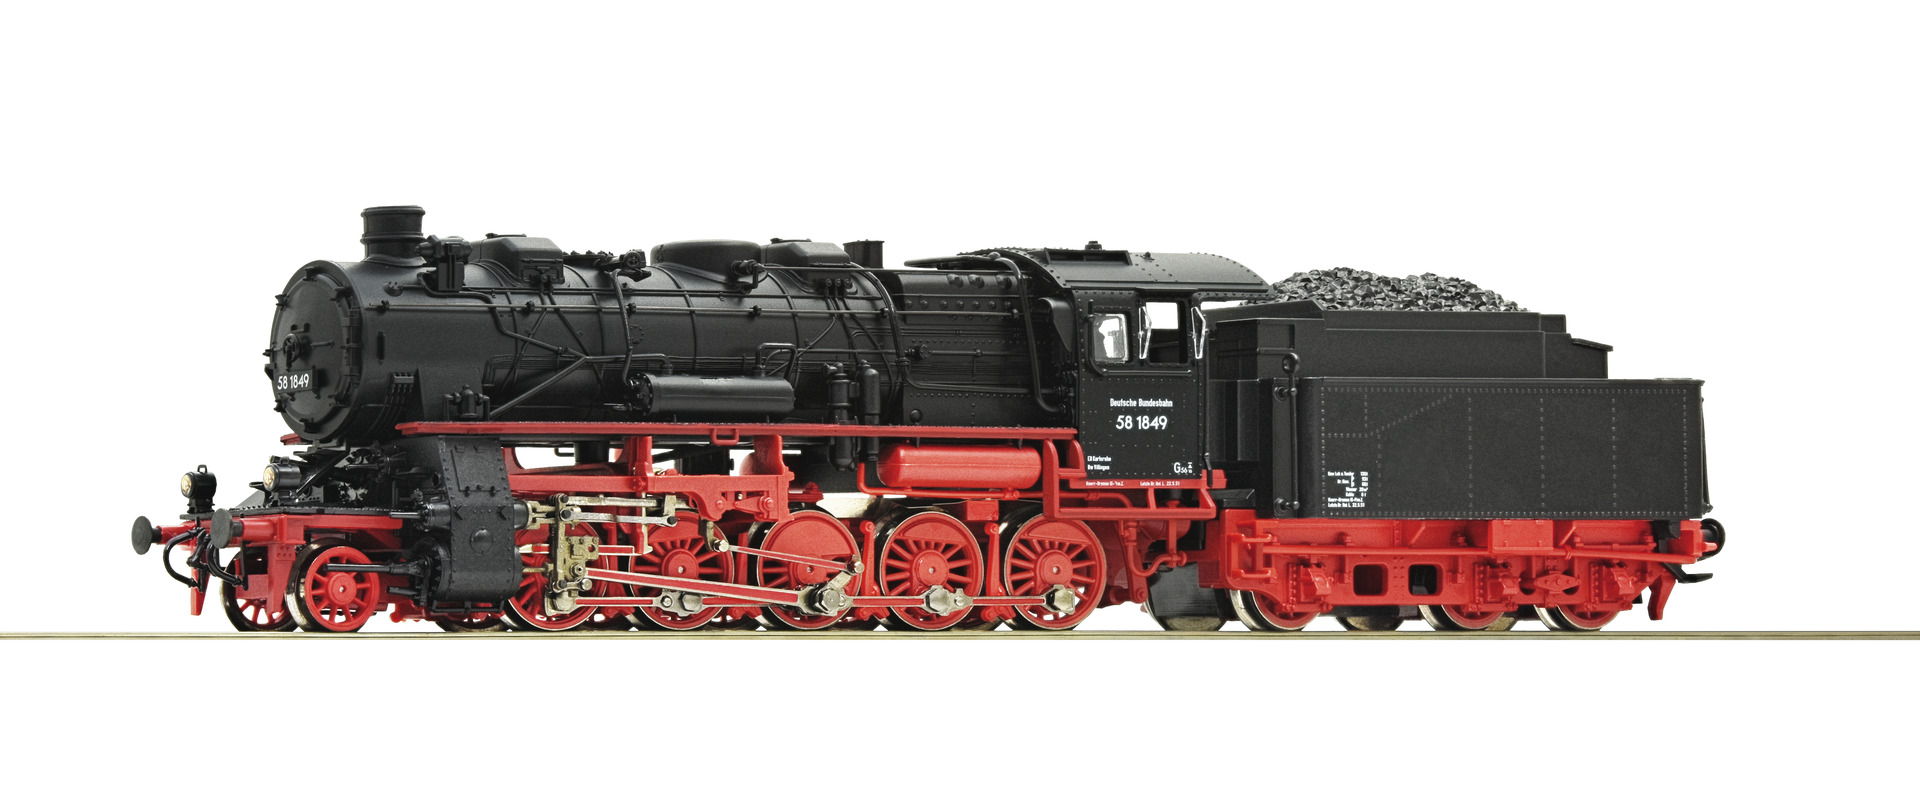 roco-71922-Dampflokomotive-BR-581849-Jubiläumsmodell-60-Jahre-Roco